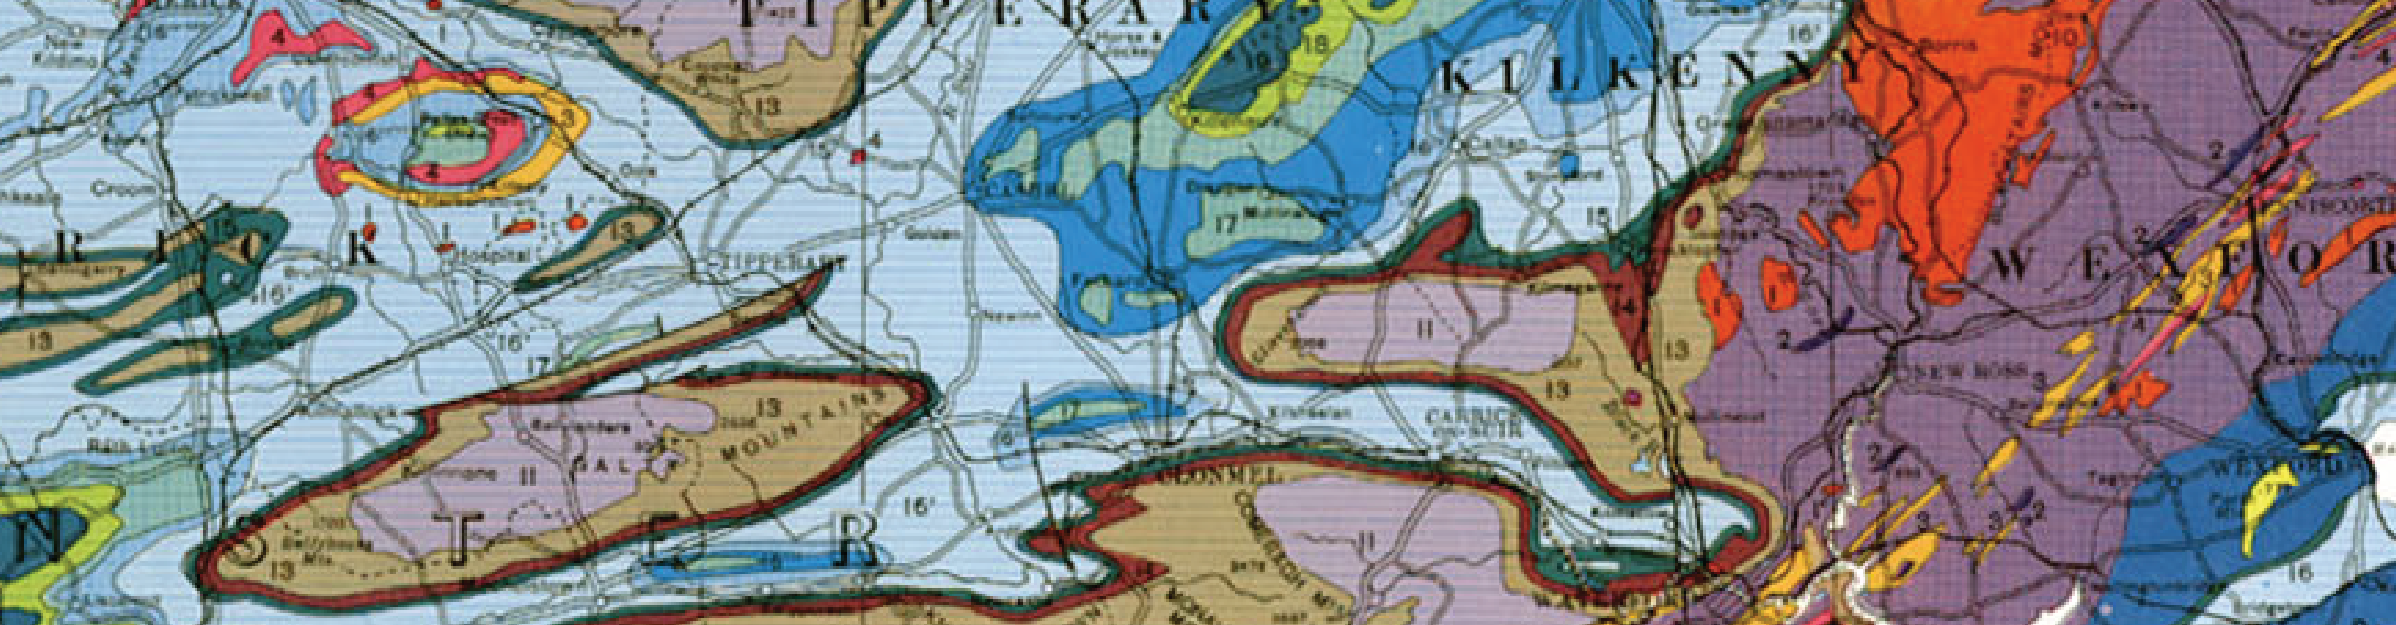 Map image courtesy of the Geological Survey of Ireland.